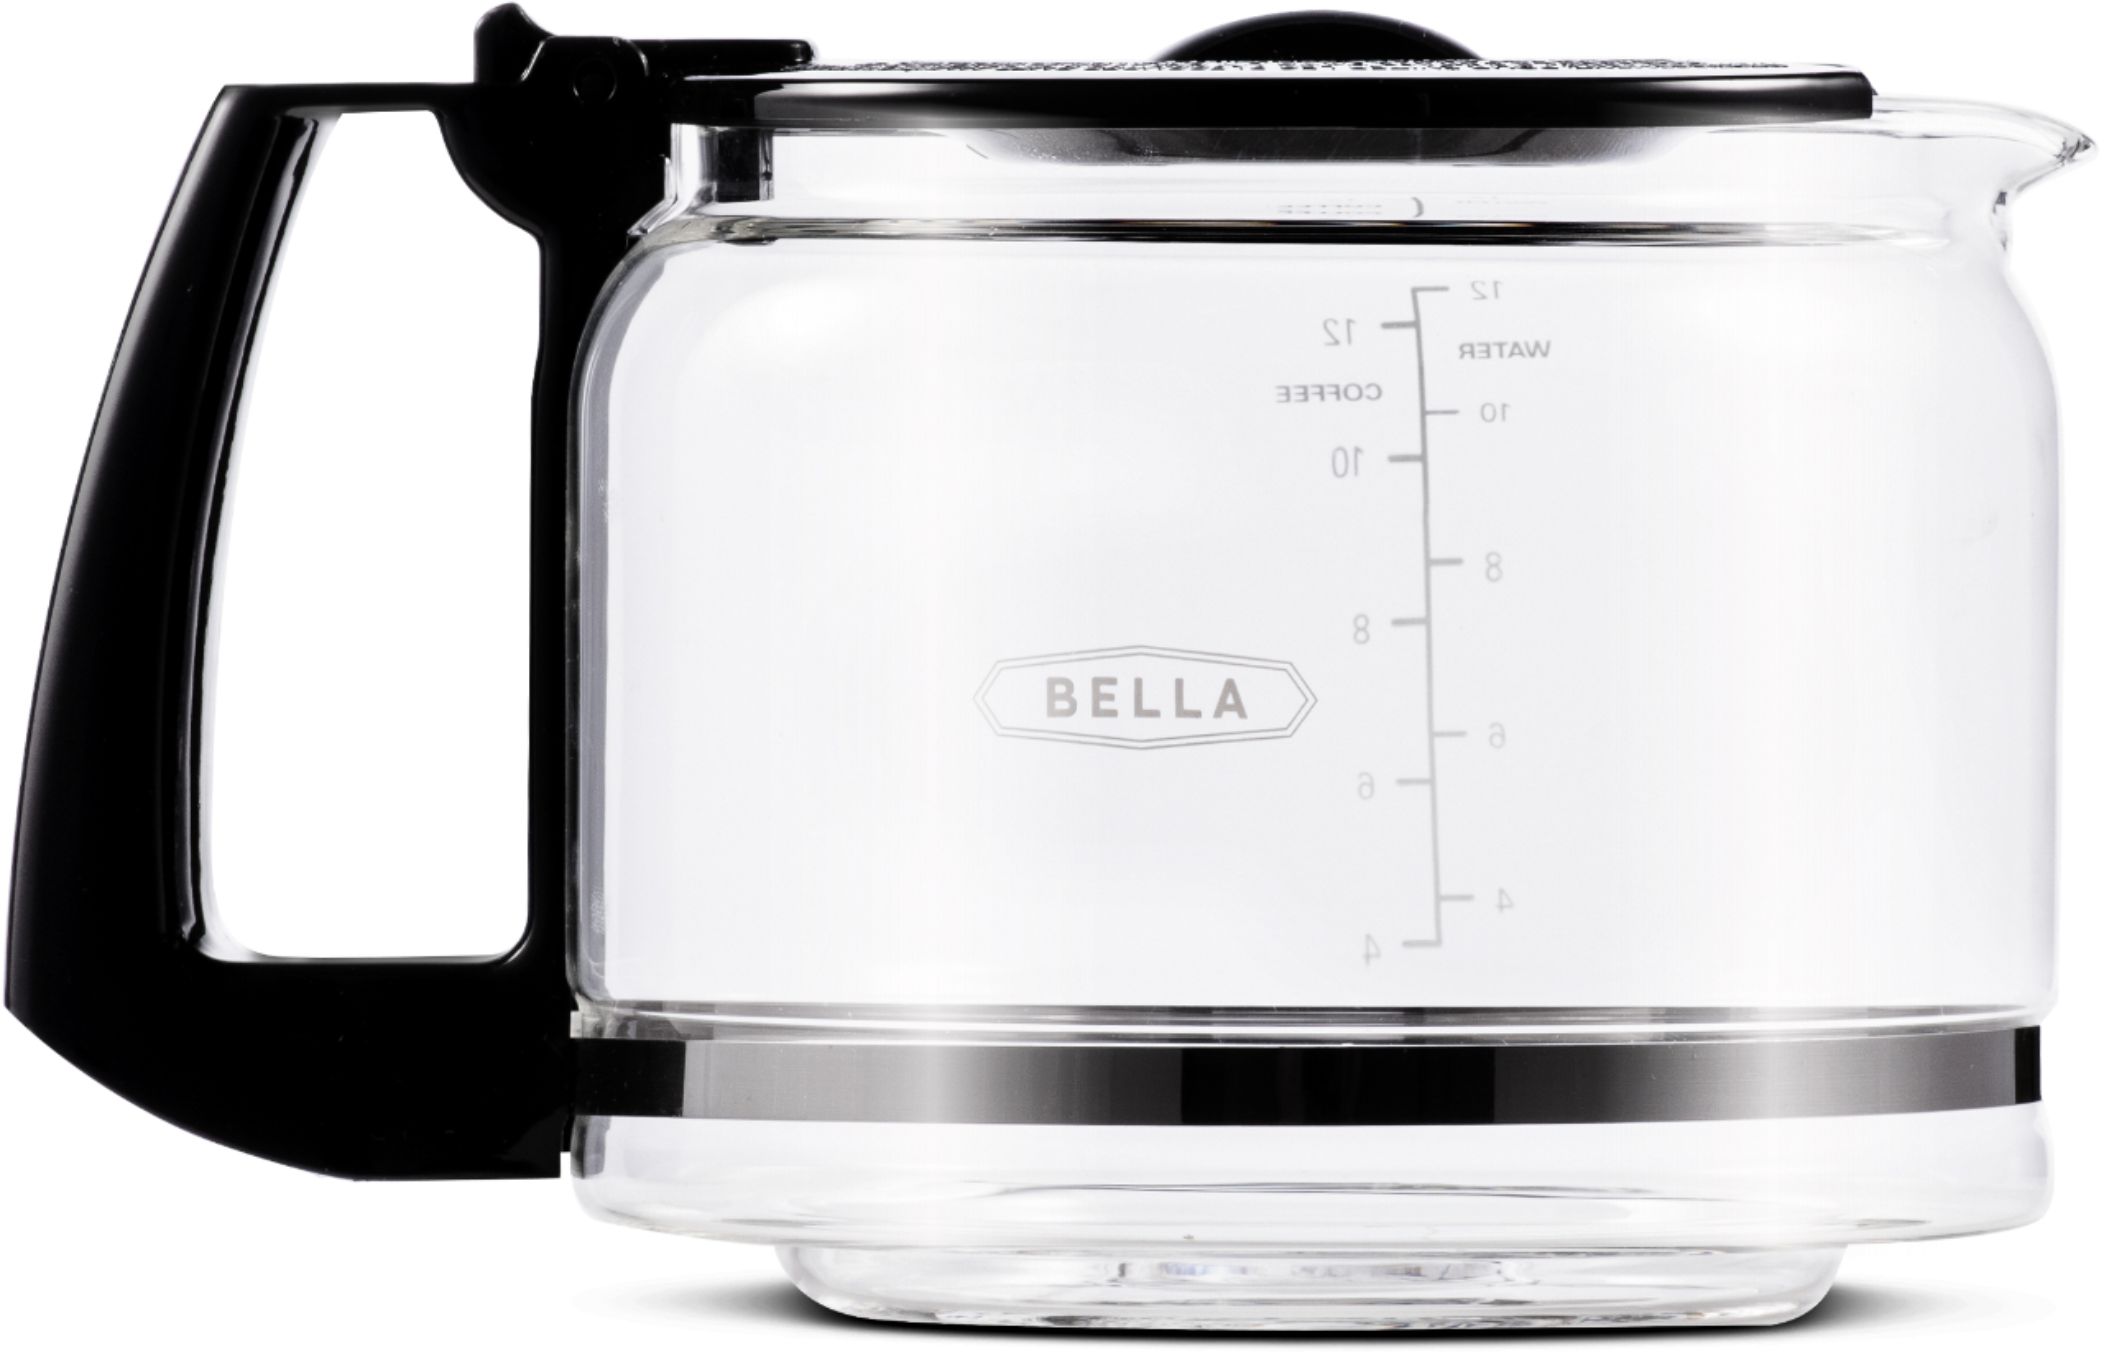 Bella 12-Cup Programmable Coffee Maker Black 14830 - Best Buy